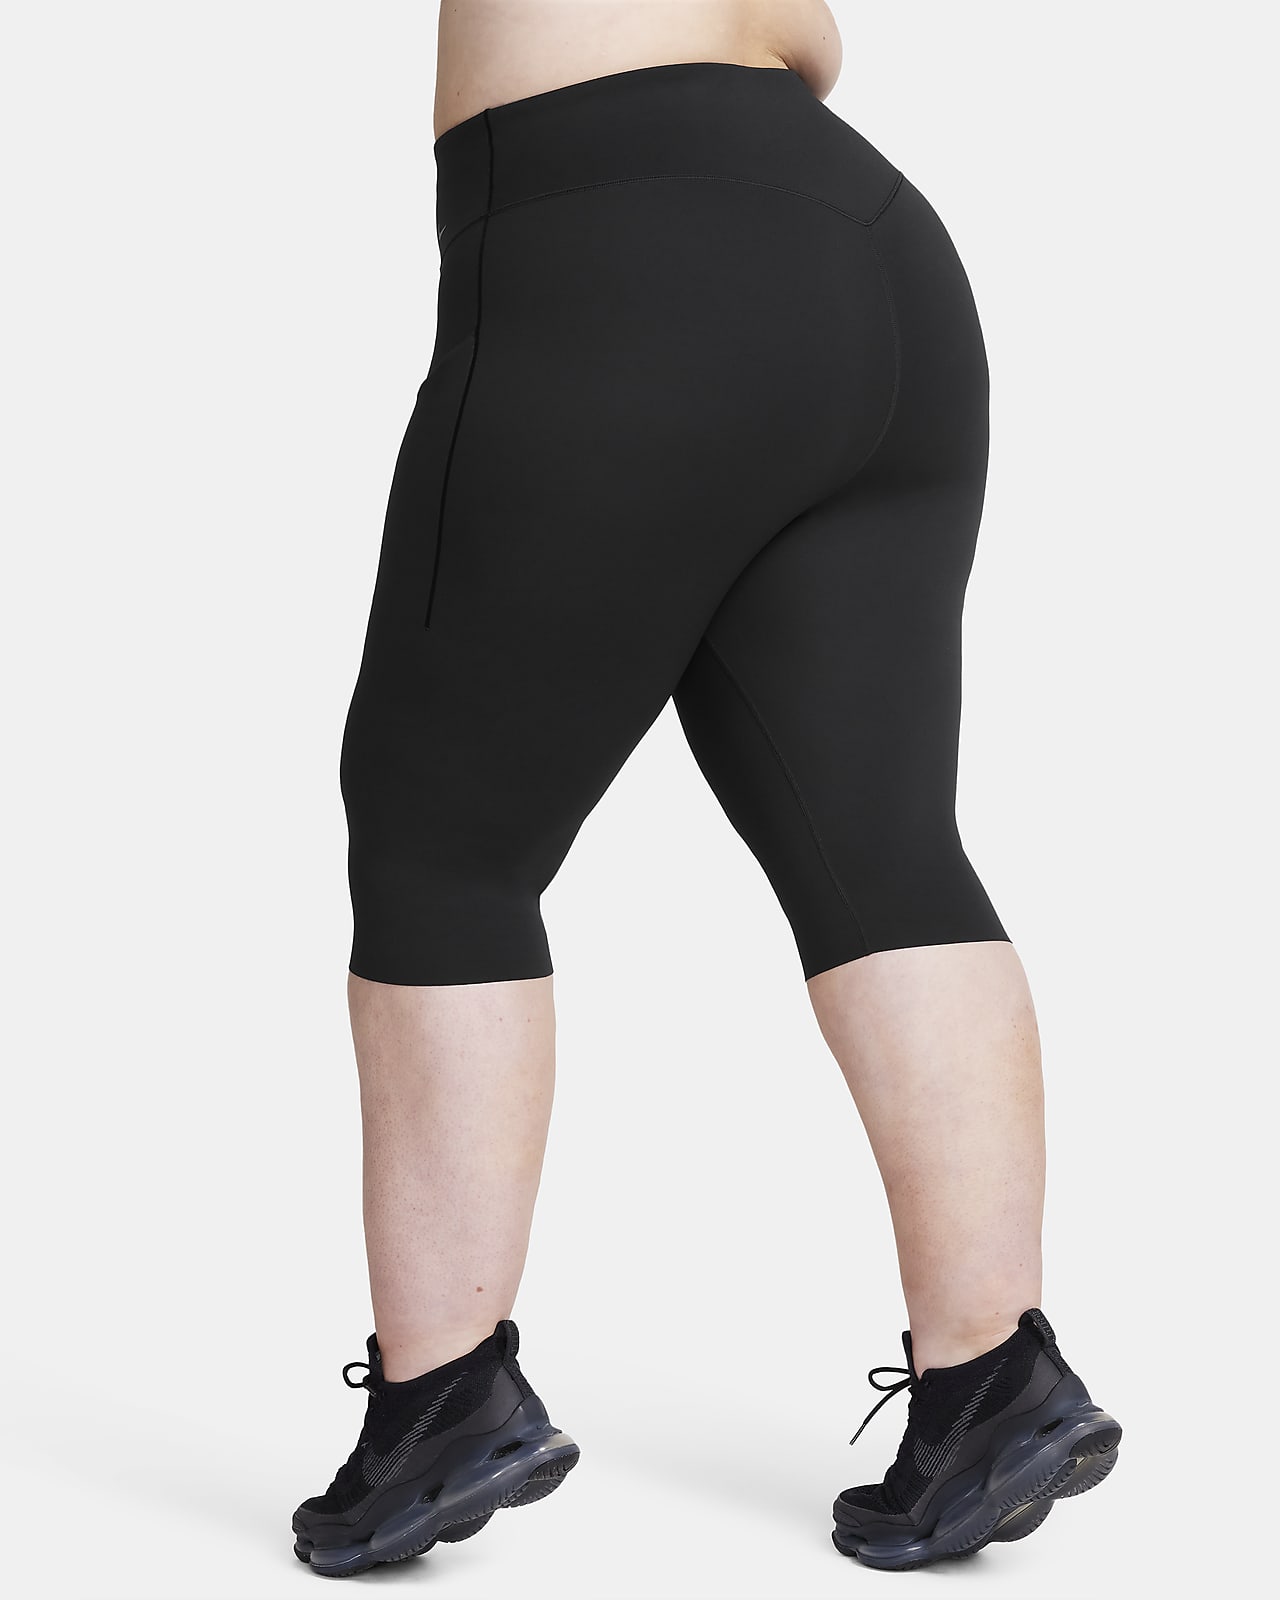 Nike Capri Leggings, Back zipper, Drawstring, Size 